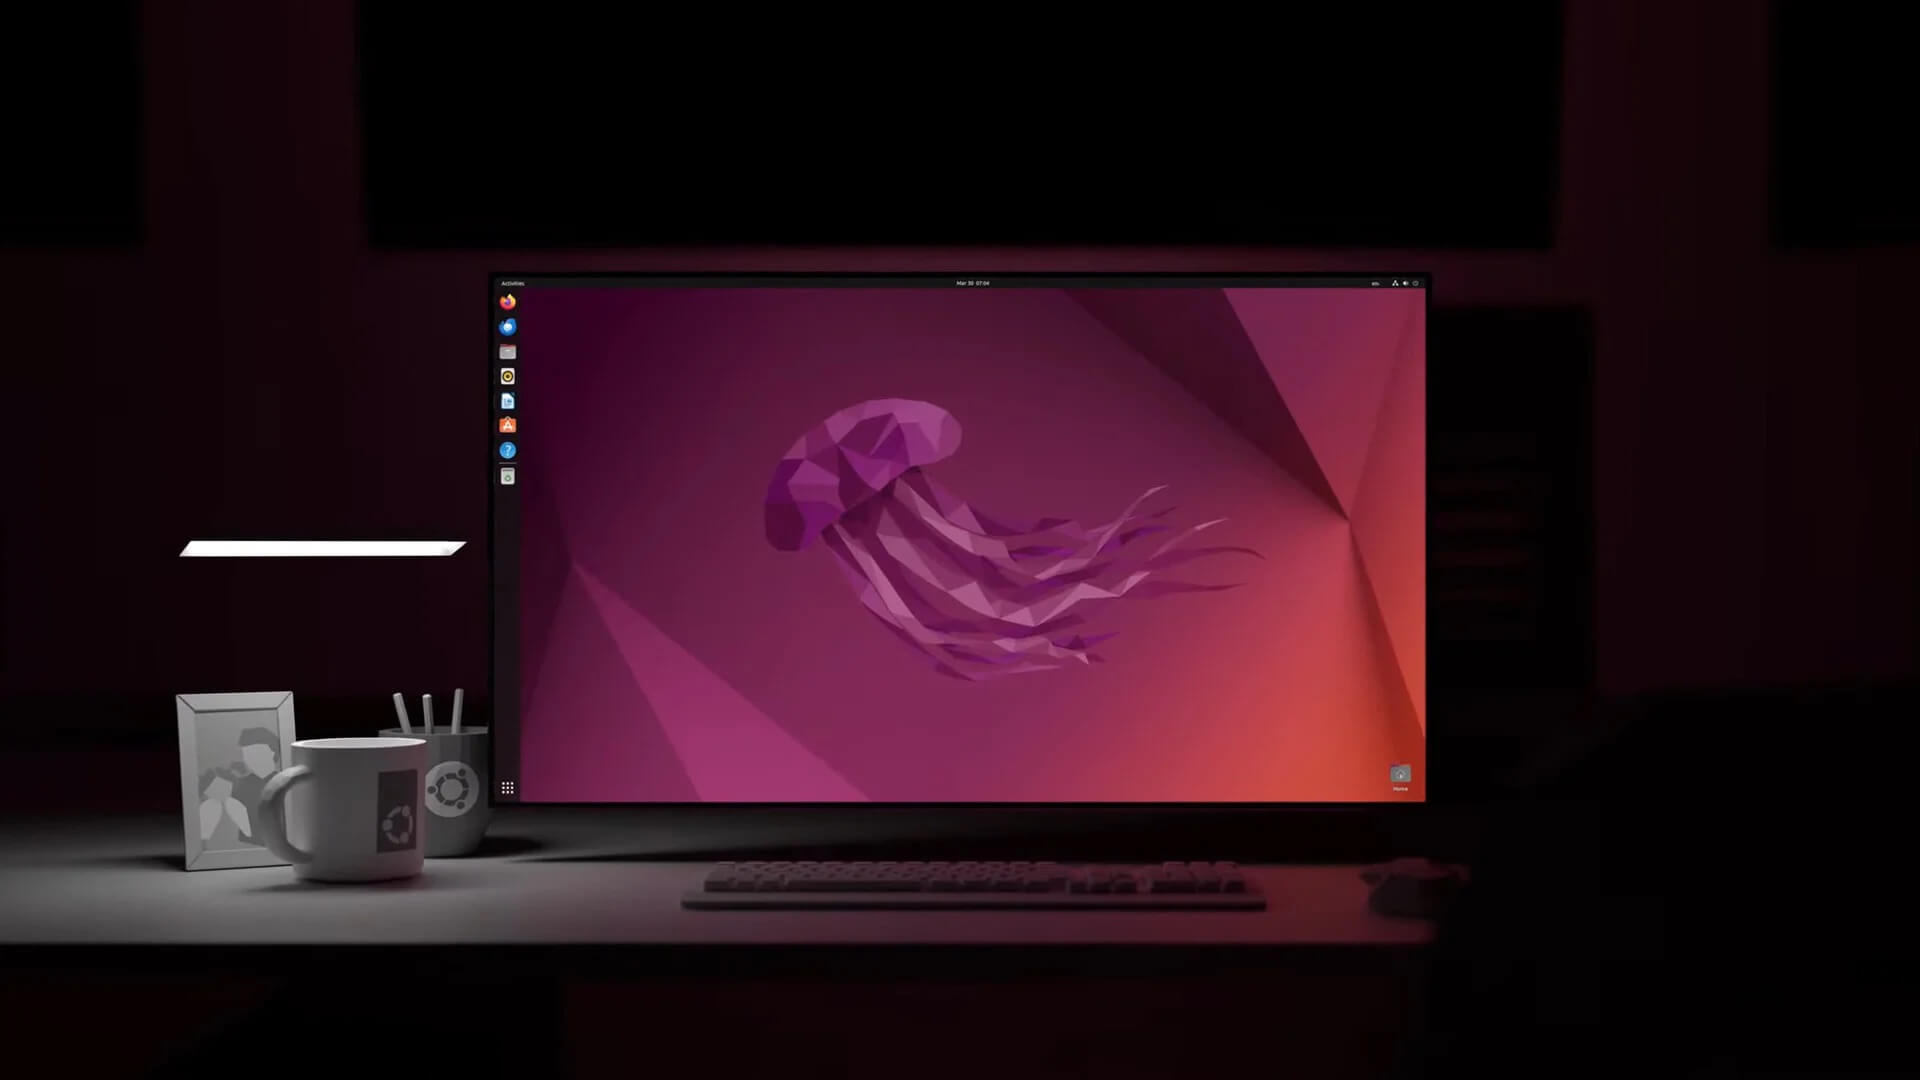 Вышла новая версия Ubuntu с долгосрочной поддержкой